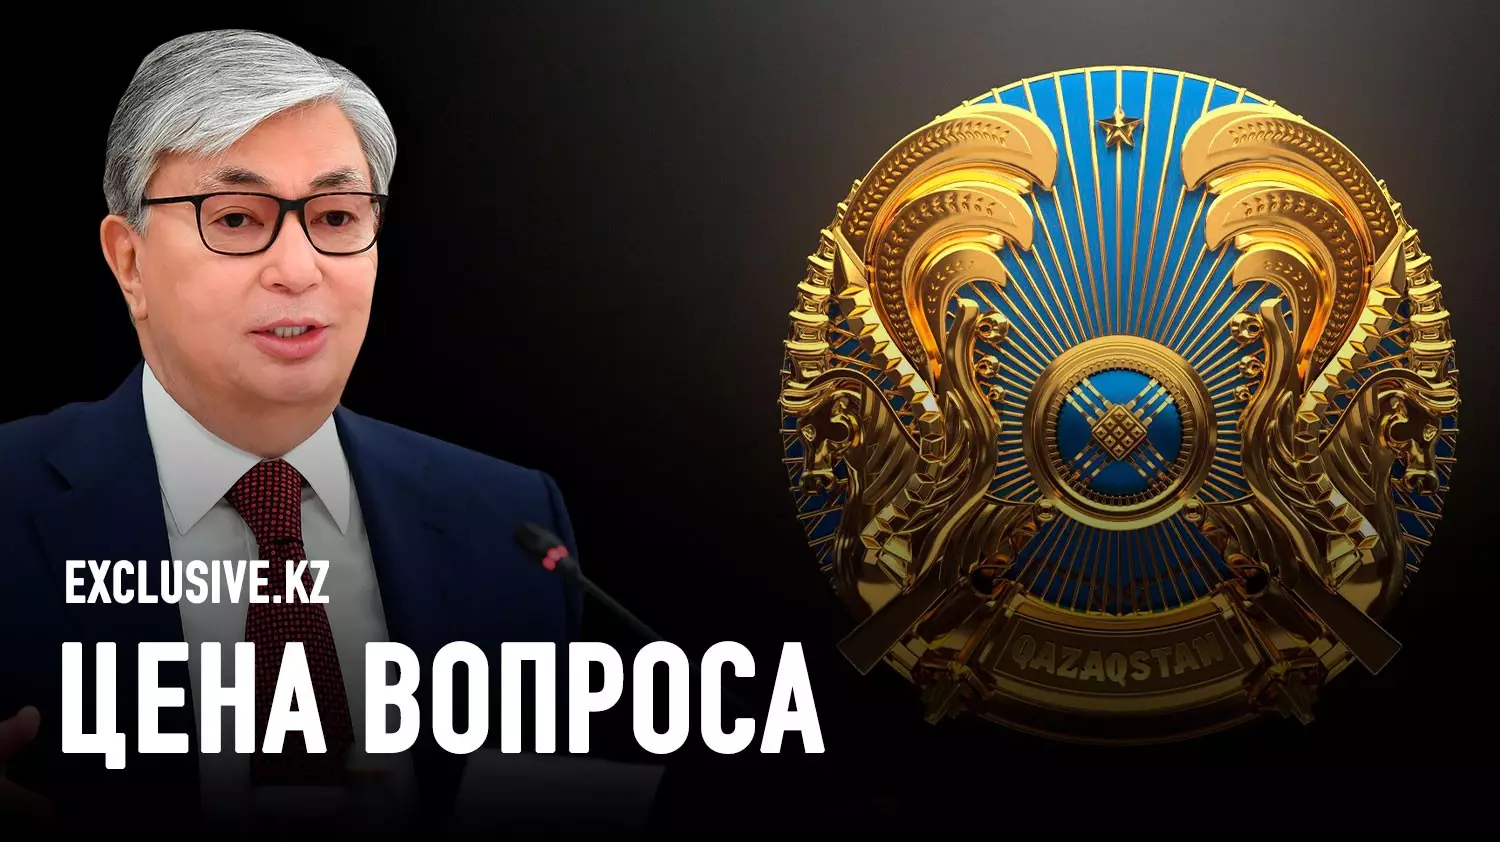 Герб Казахстана: от советской символики к тюркской